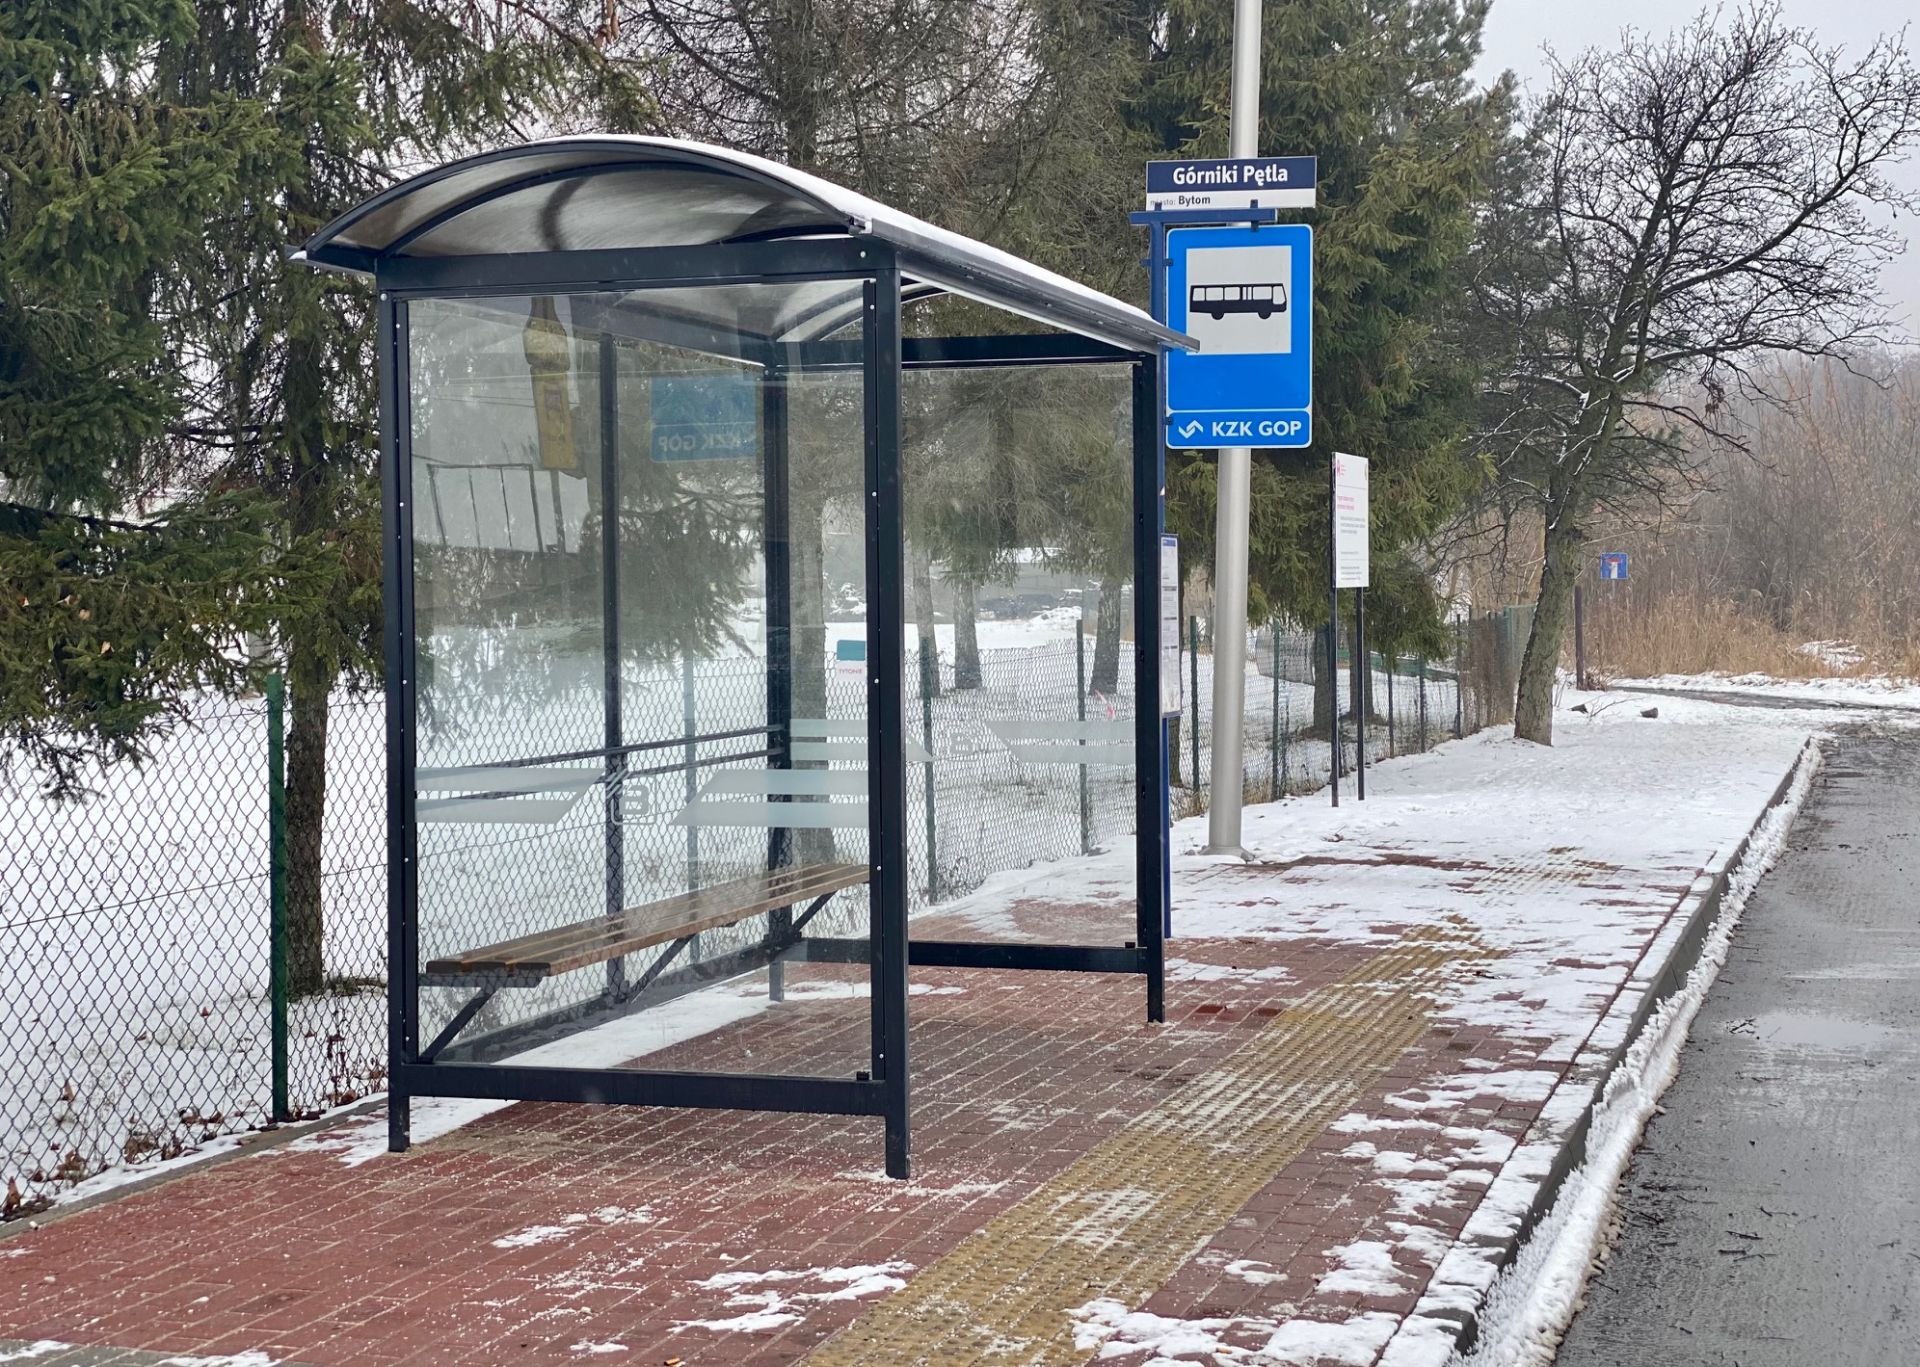 Kolejne przystanki autobusowe zmodernizowane